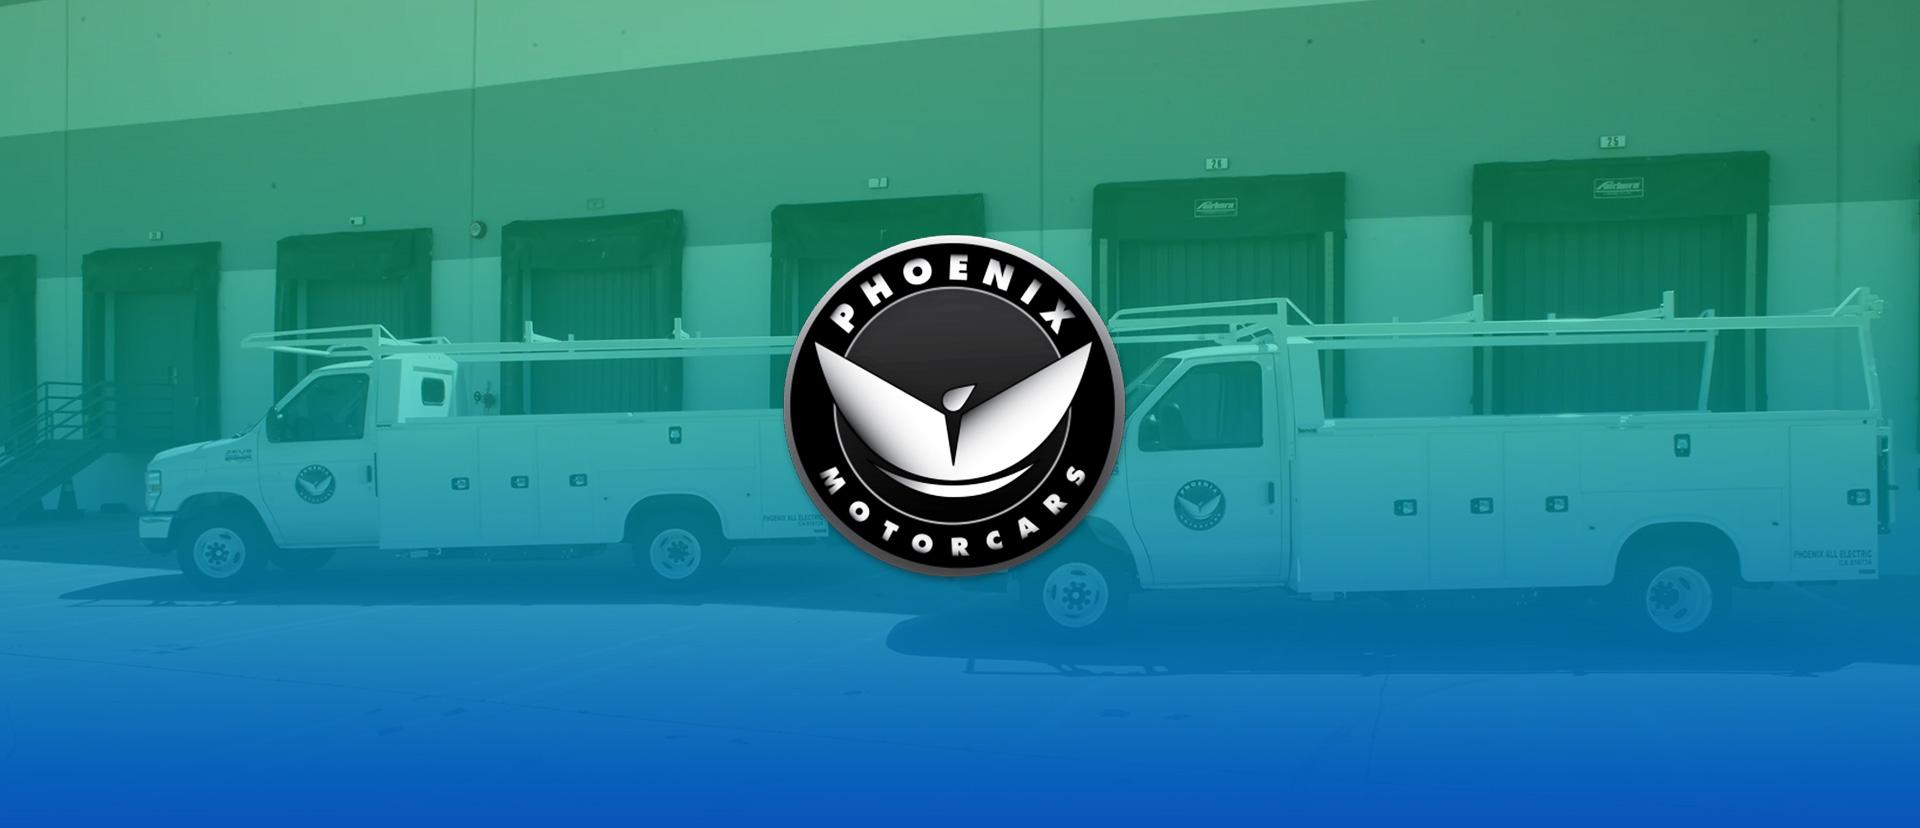 الاكتتاب العام الأولي لشركة Phoenix Motor: طرح صانع سيارات كهربائي آخر للجمهور